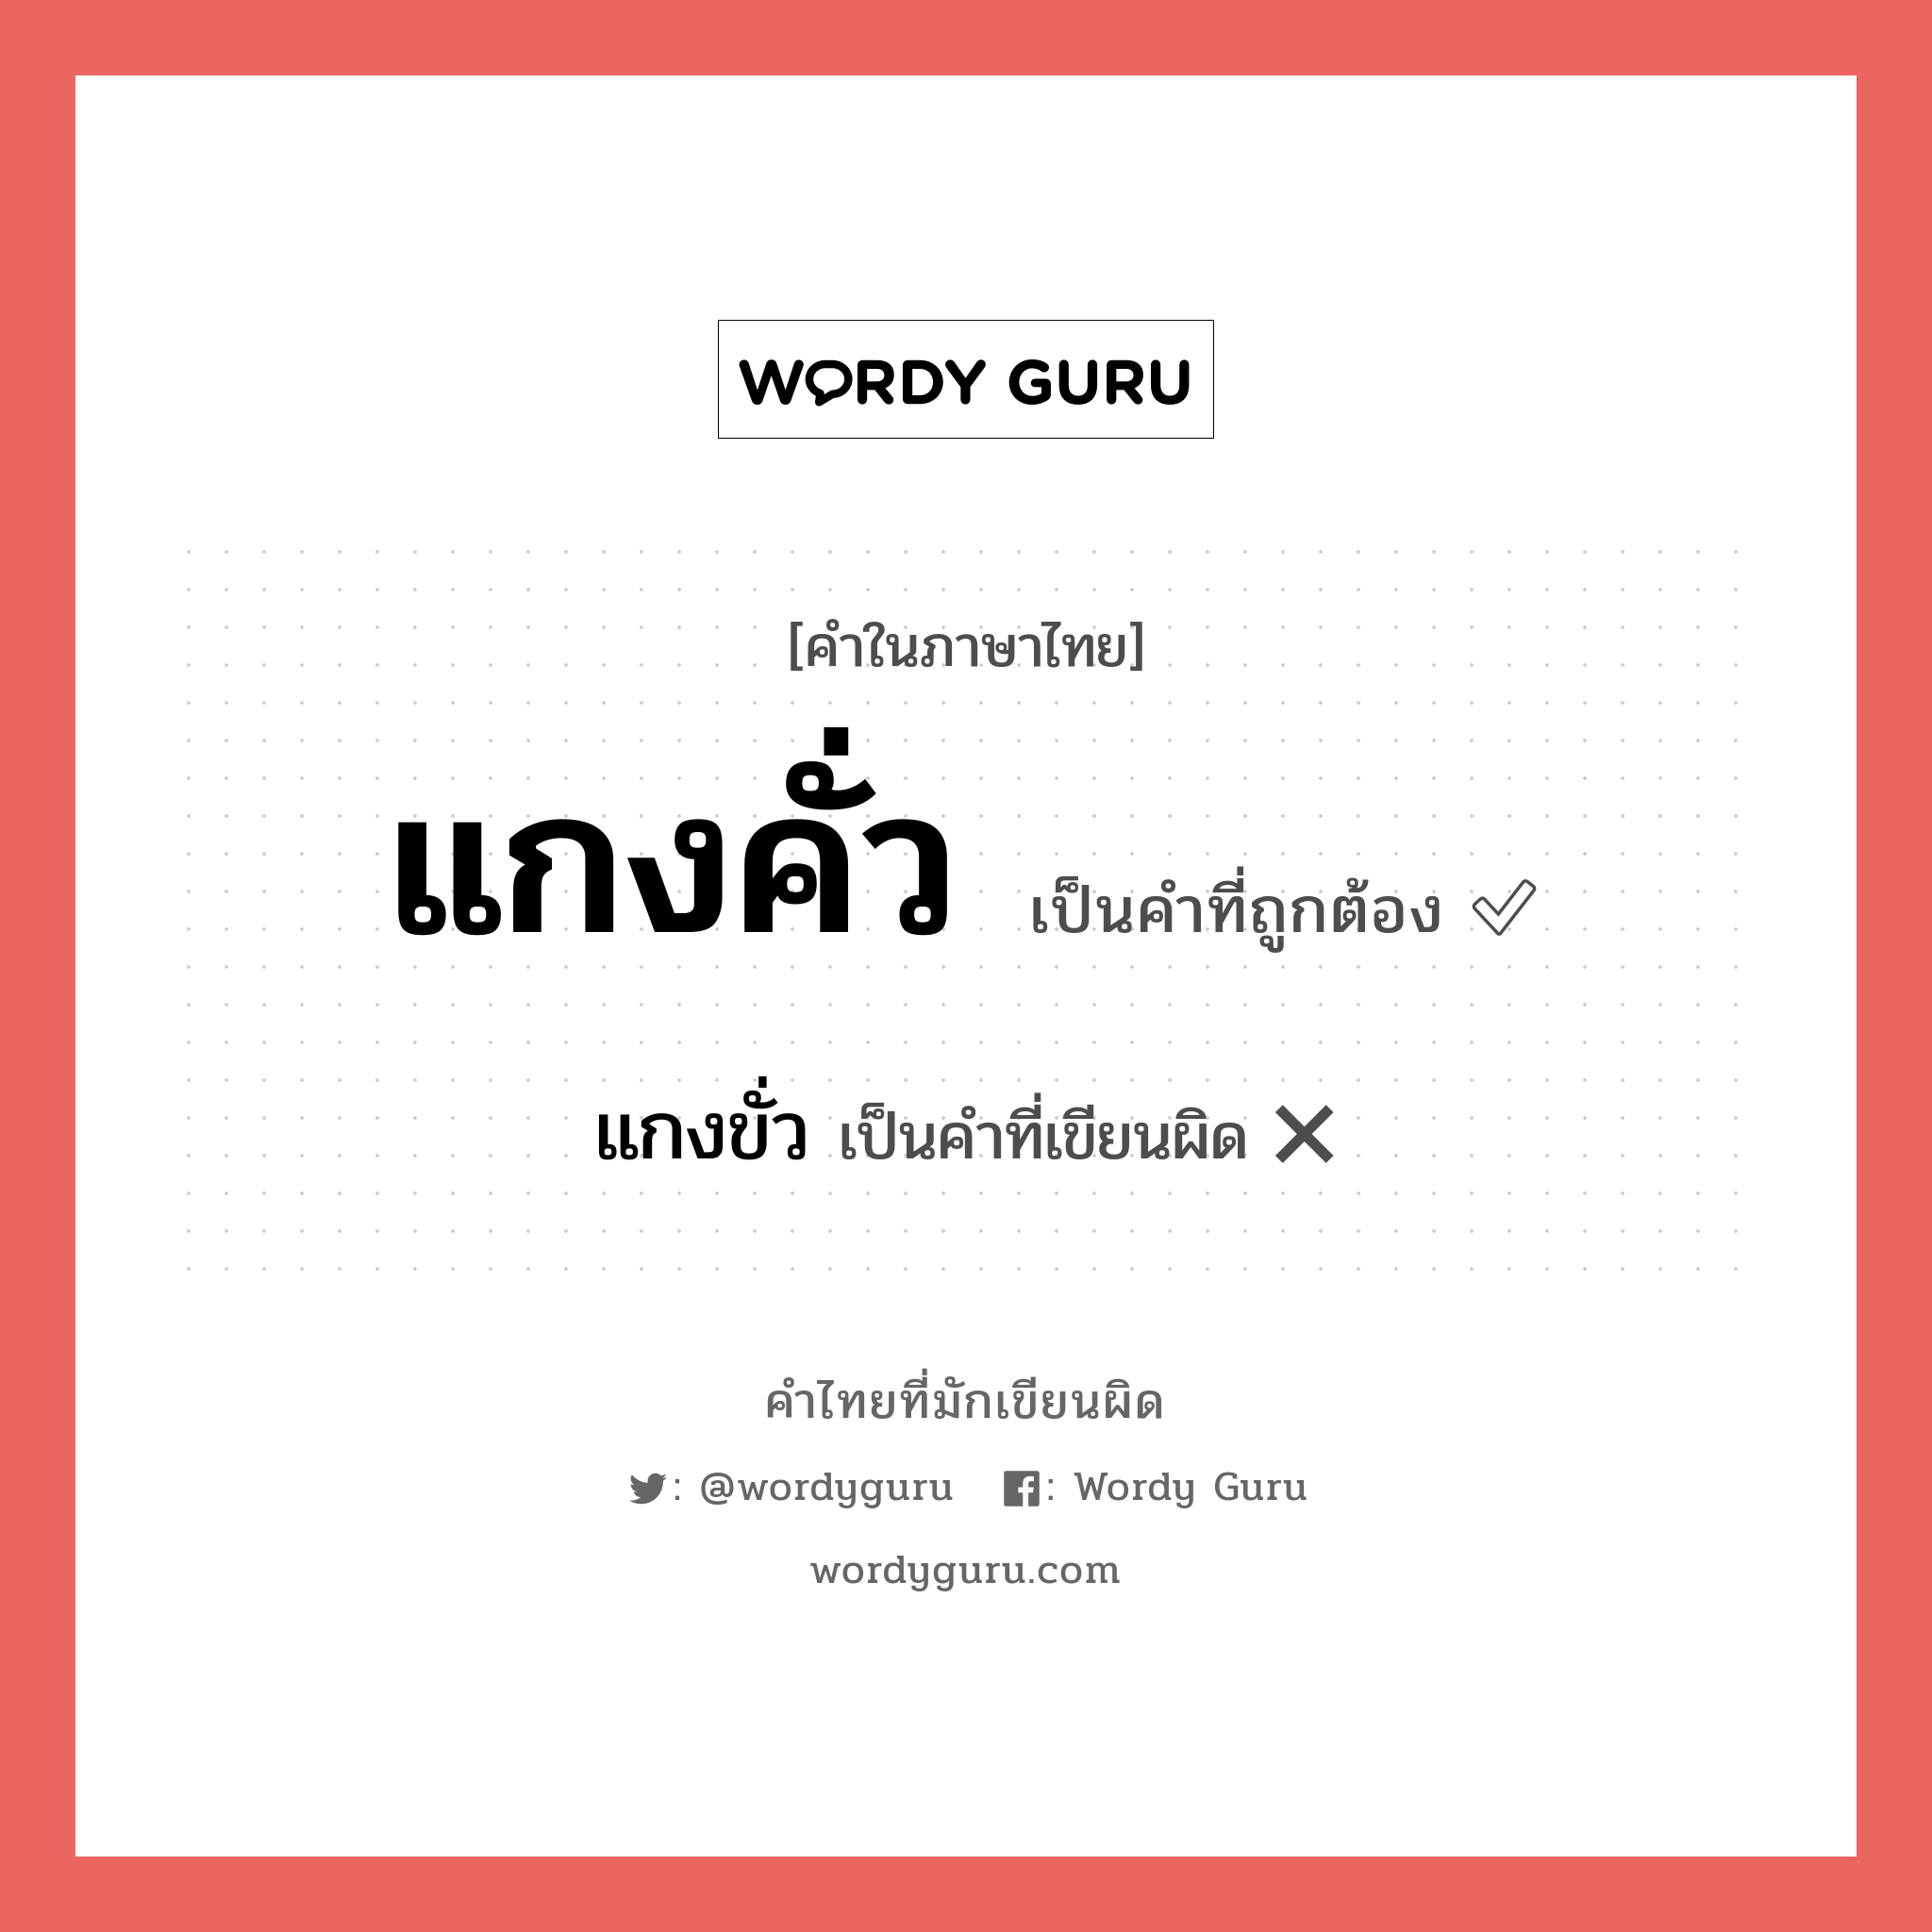 แกงขั่ว หรือ แกงคั่ว คำไหนเขียนถูก?, คำในภาษาไทยที่มักเขียนผิด แกงขั่ว คำที่ผิด ❌ แกงคั่ว